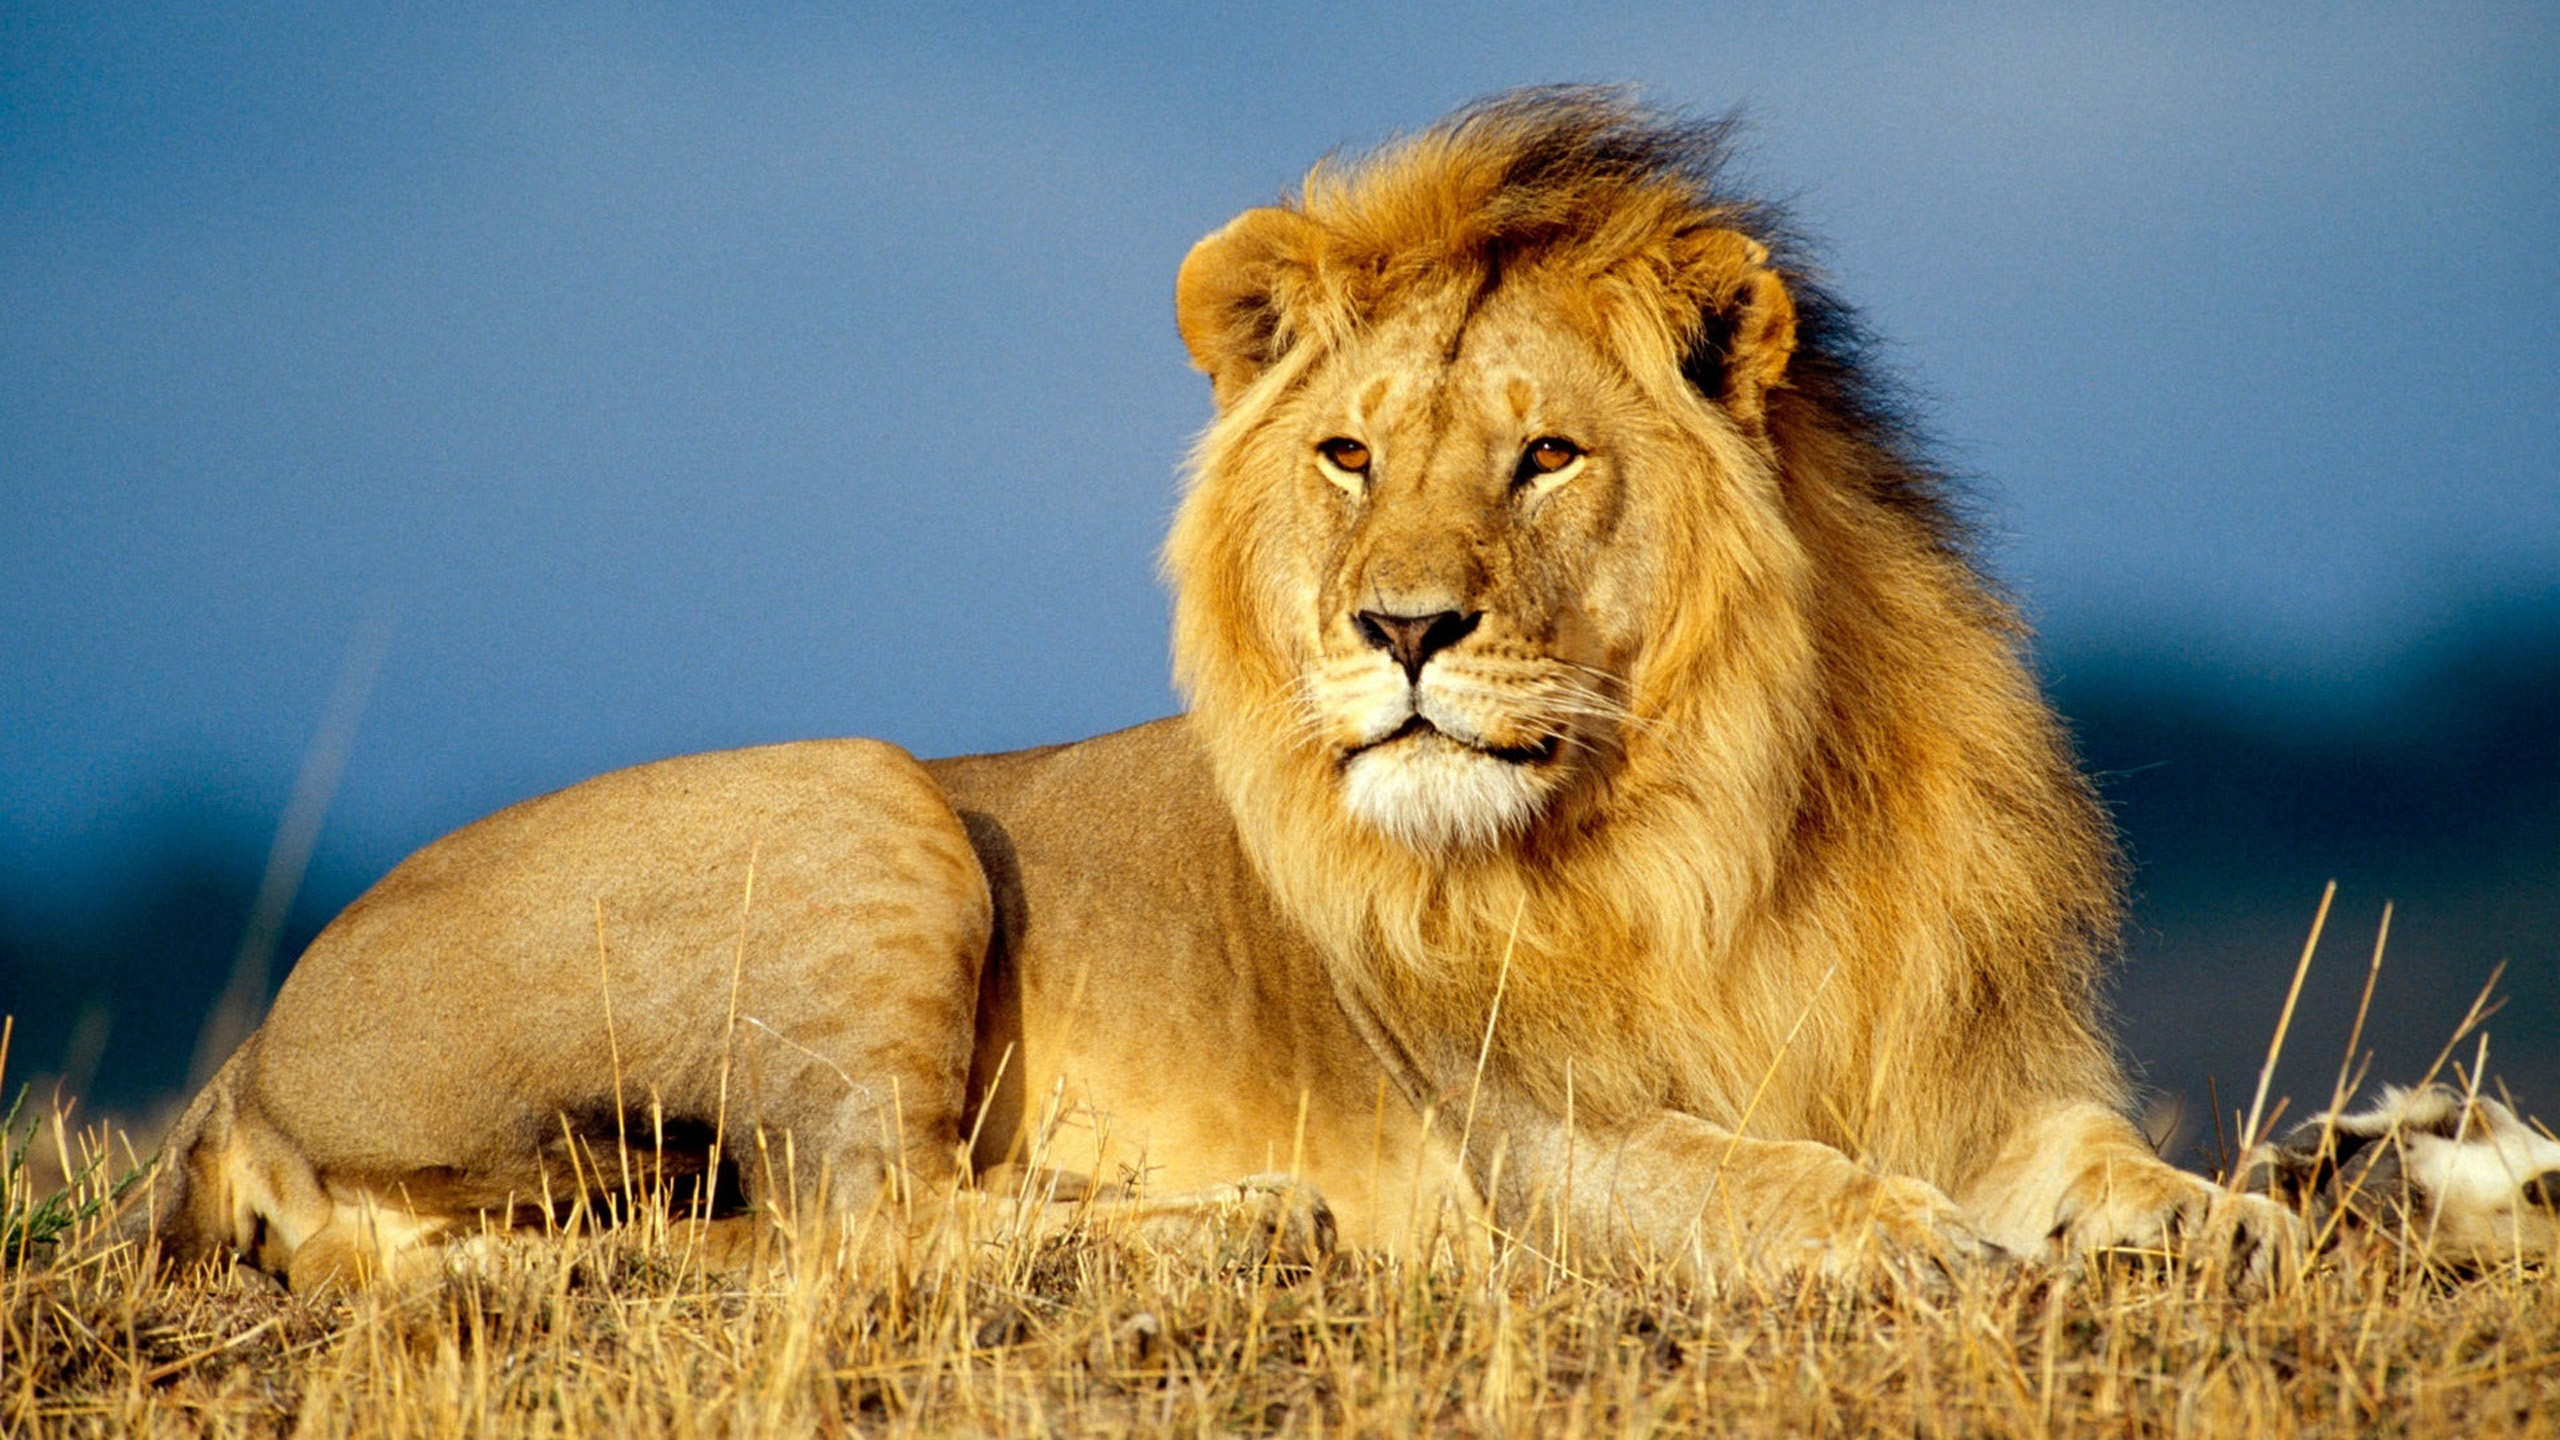 Natural Lions Wallpaper HD S